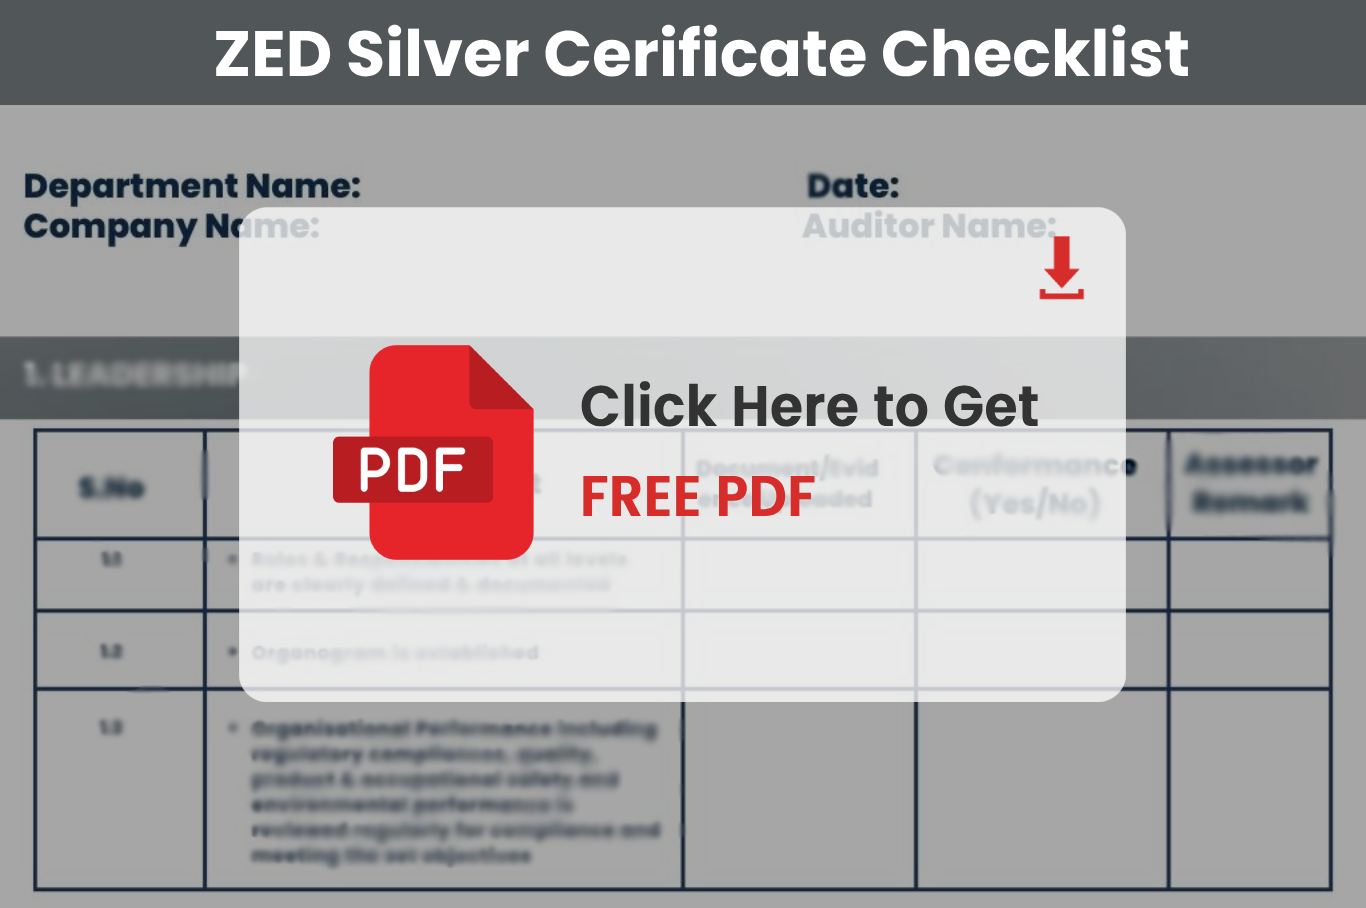 zed bronze certification checklist 